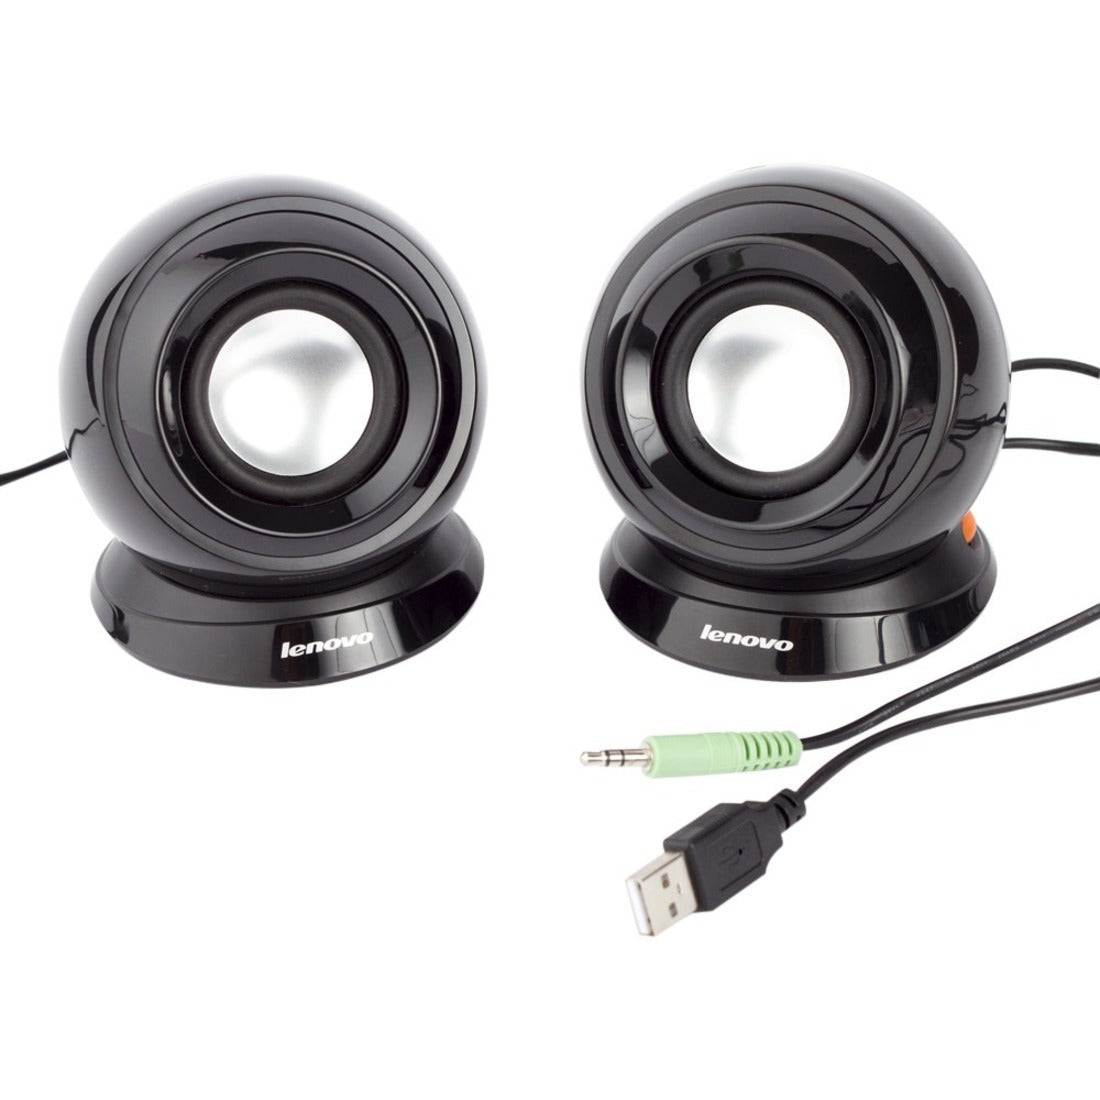 Lenovo 888010120 Speaker M0520 2.0 Speaker System, 2W RMS, Black